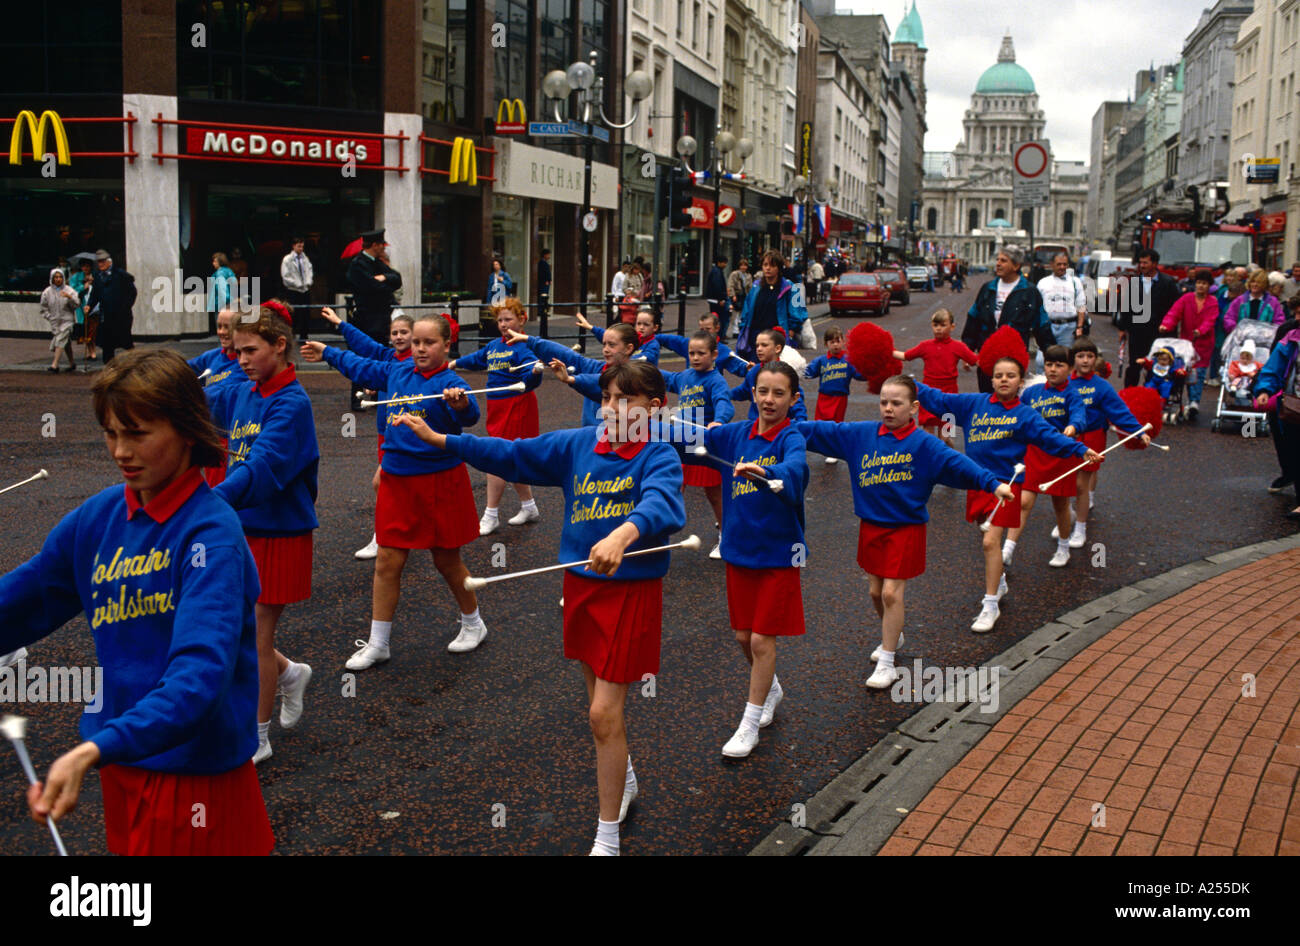 Les membres de la troupe de majorette Coleraine défilent dans les rues humides de Belfast, en Irlande du Nord Banque D'Images